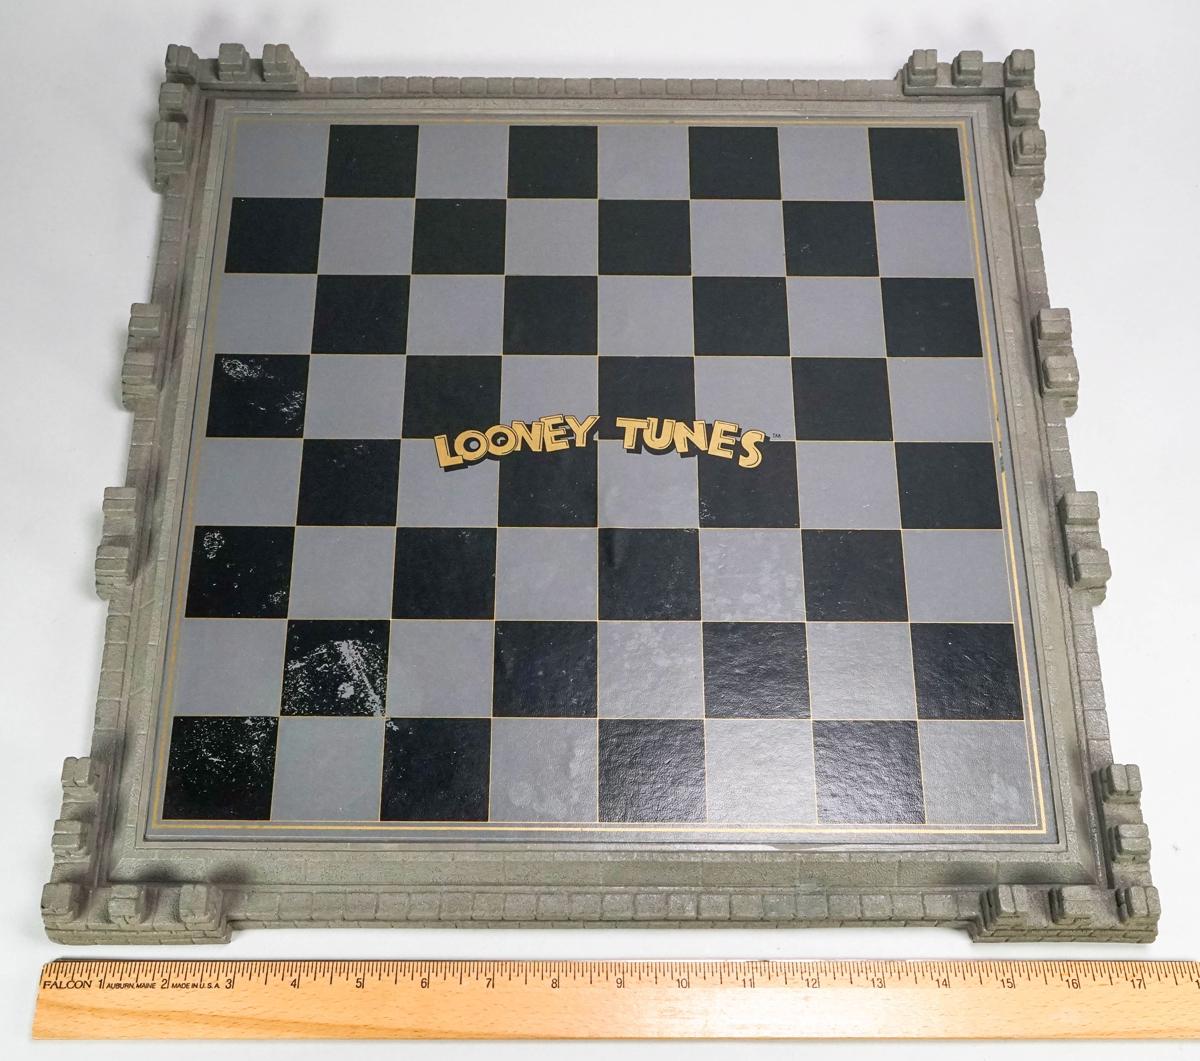 Looney Tunes Chess Set, 1990